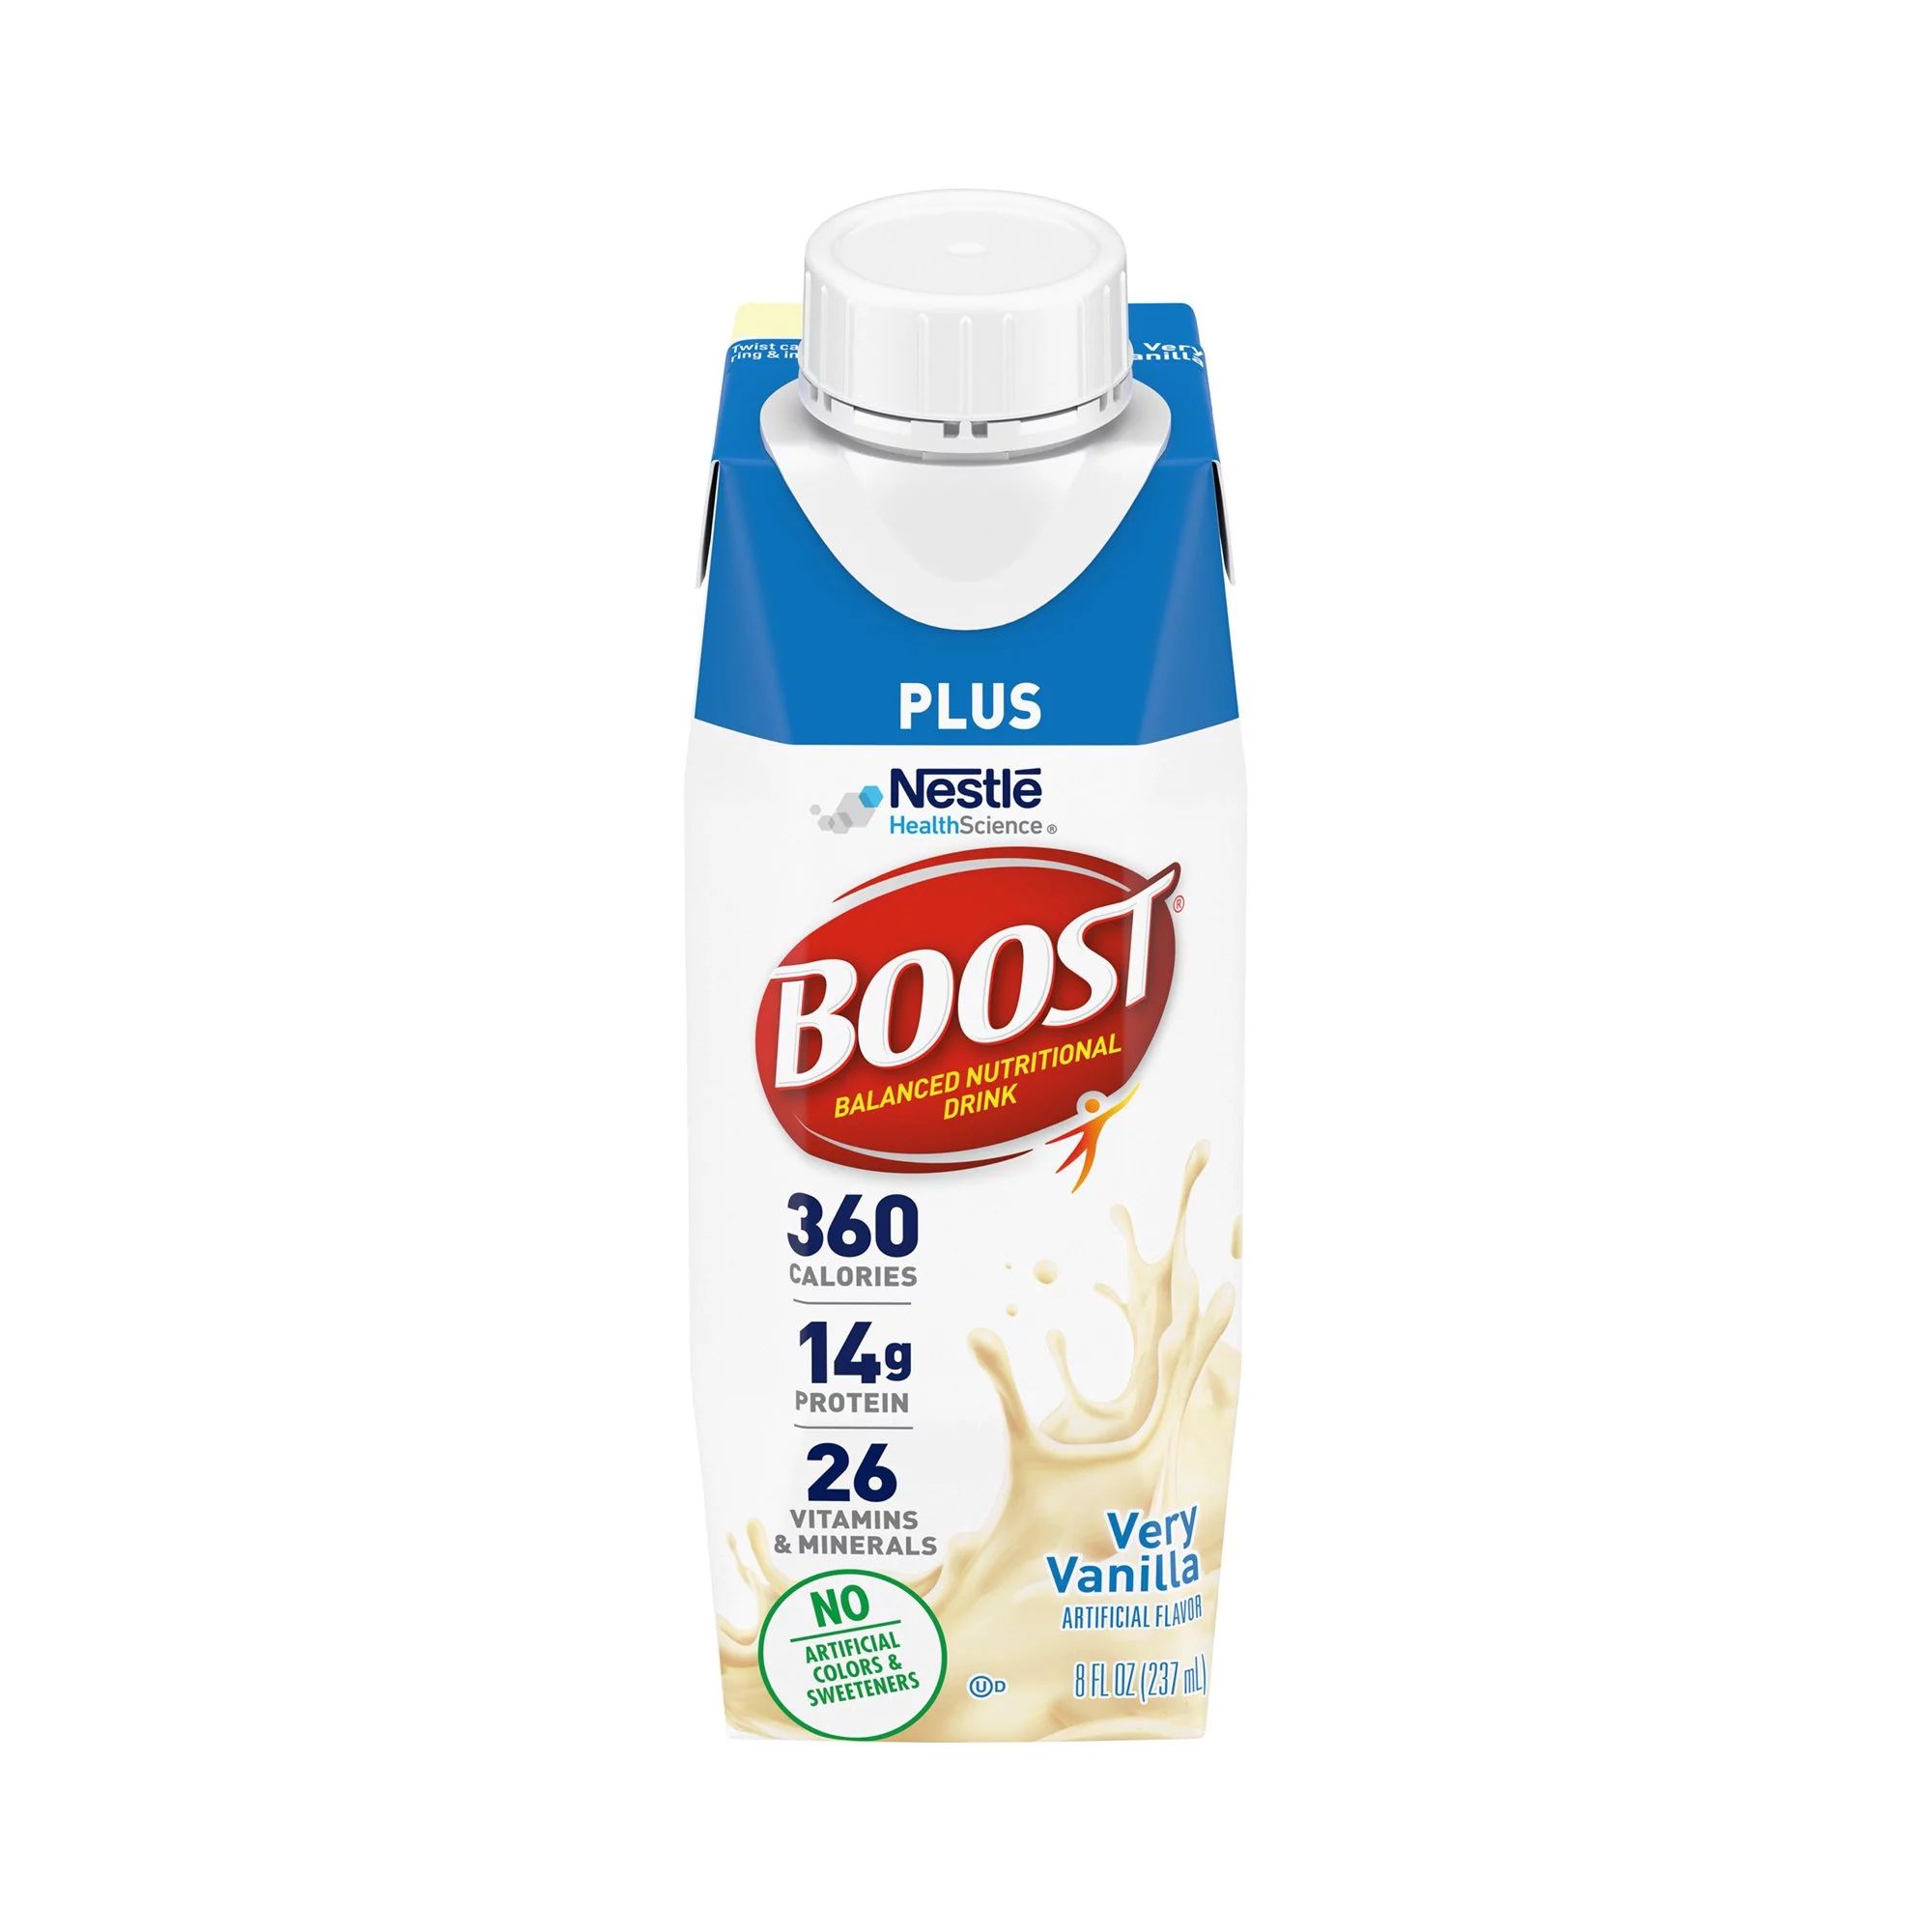 DISCBoost Plus Nutritional Drink, 14g Protein, Very Vanilla, 8 fl oz - 24 ct